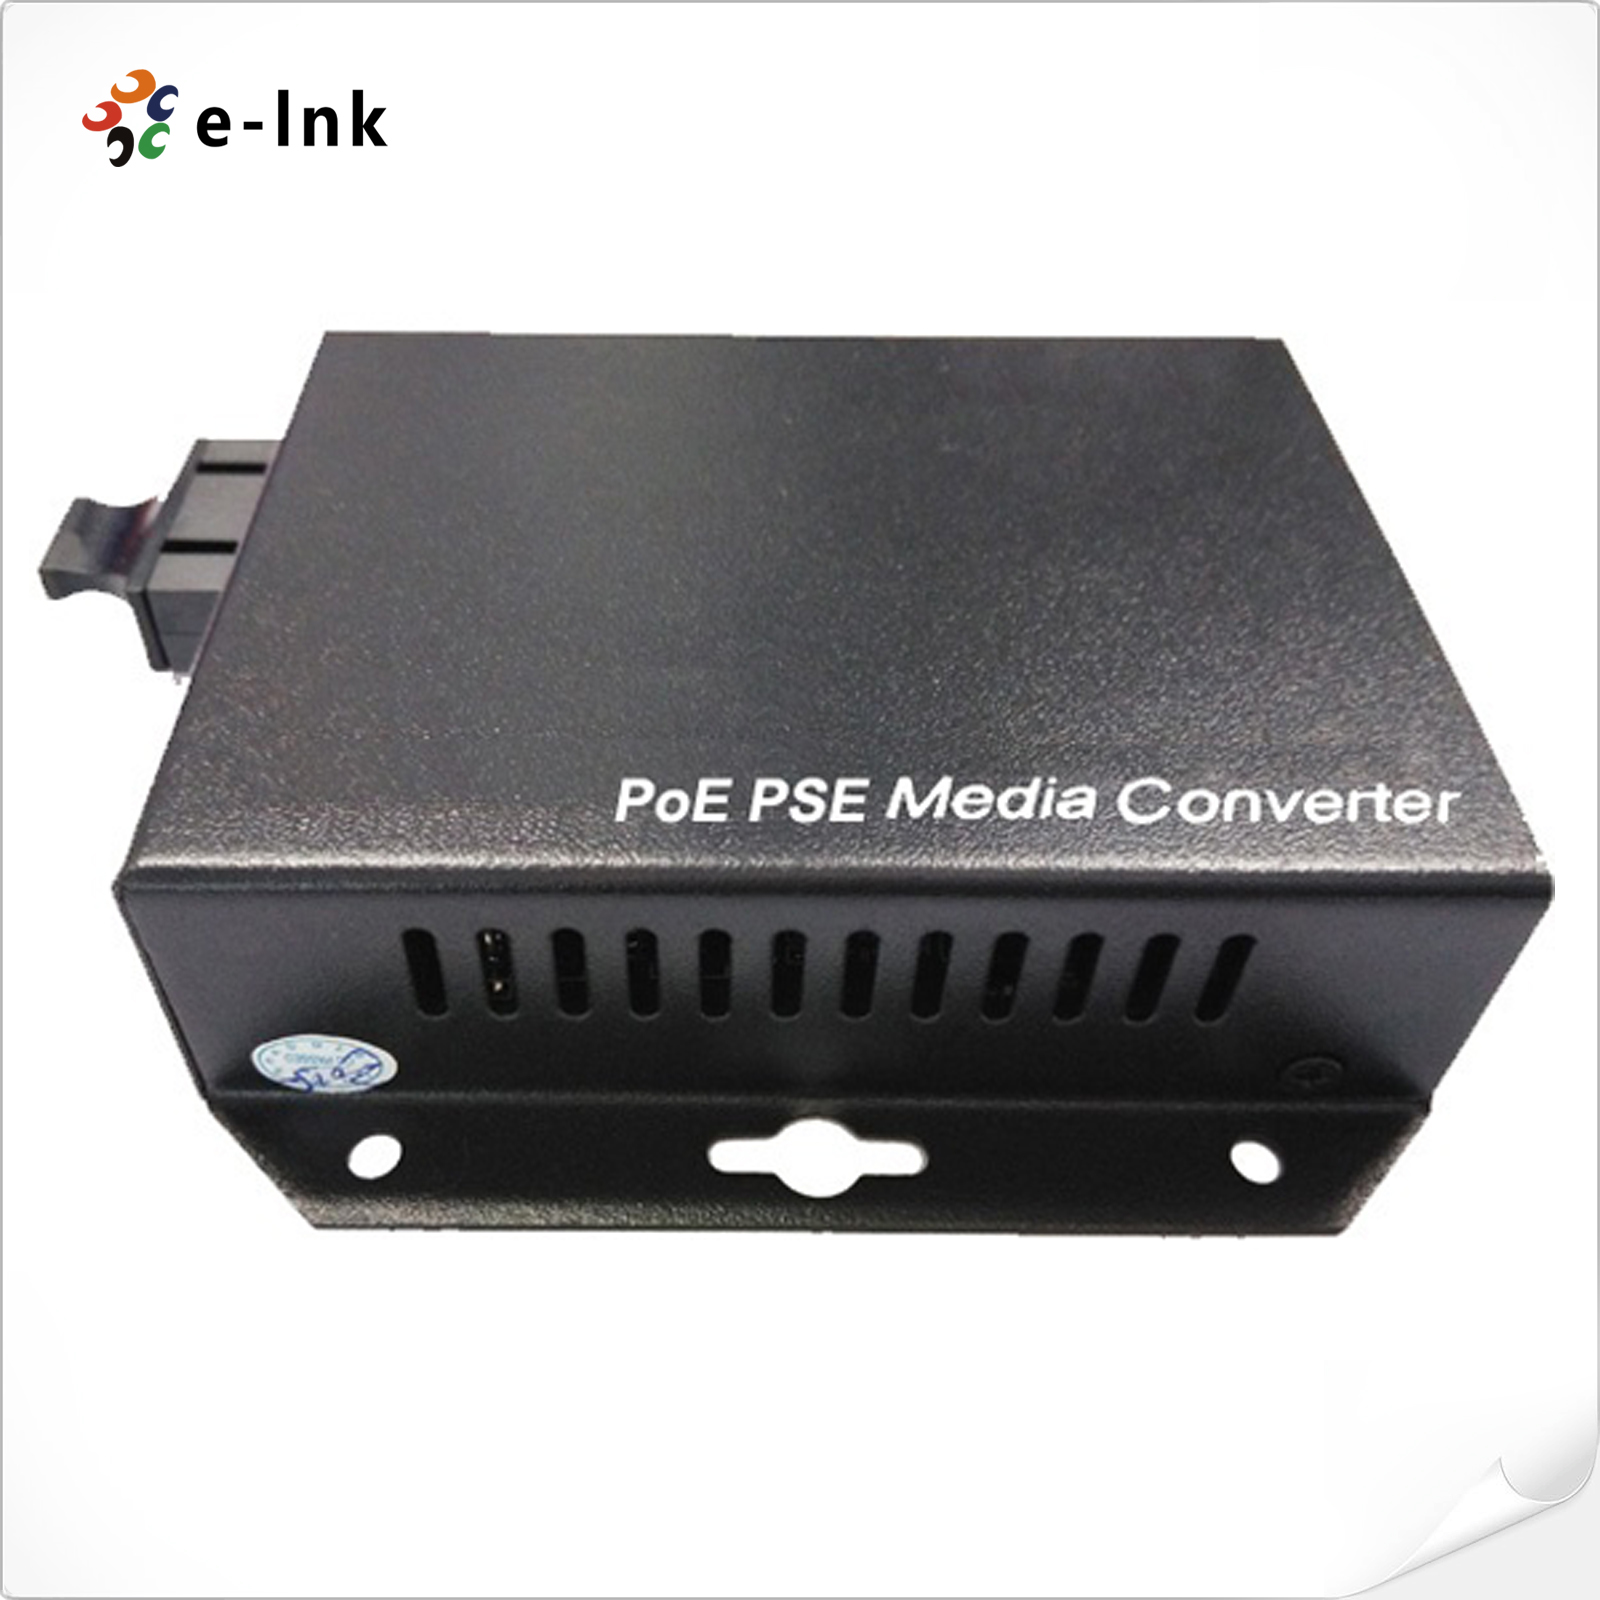 Wall-Mounted 10/100/100Mbps Gigabit PoE-PSE Fiber Media Converter